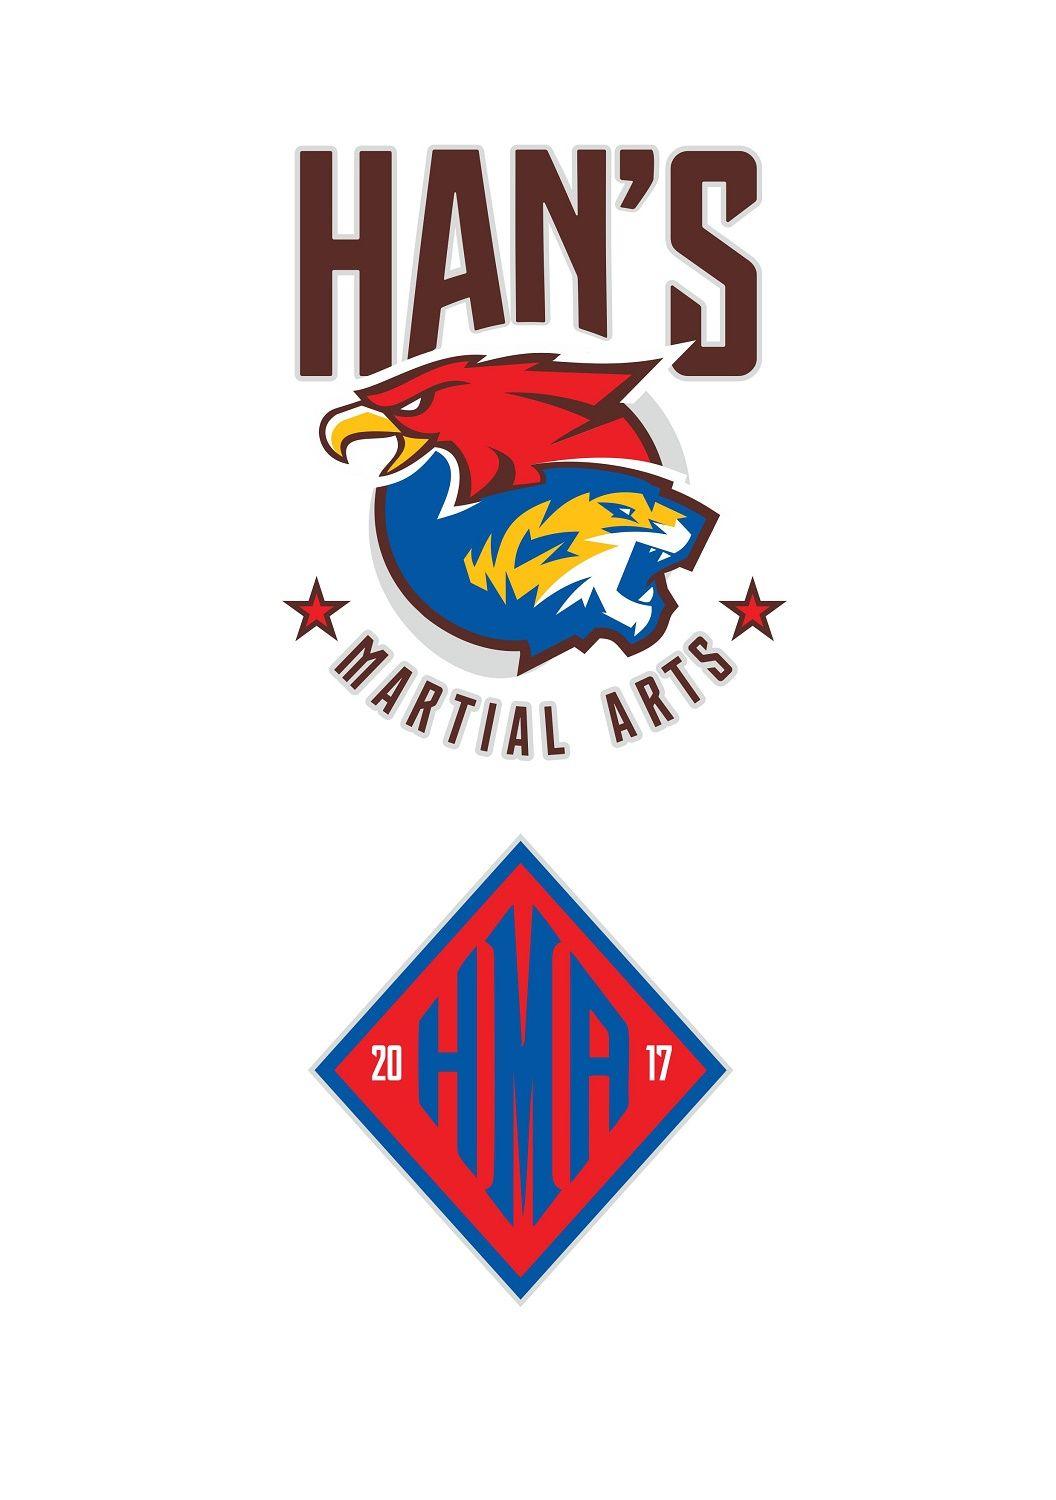 Han Logo - Bold, Colorful, Martial Art Logo Design for Han's Martial Arts